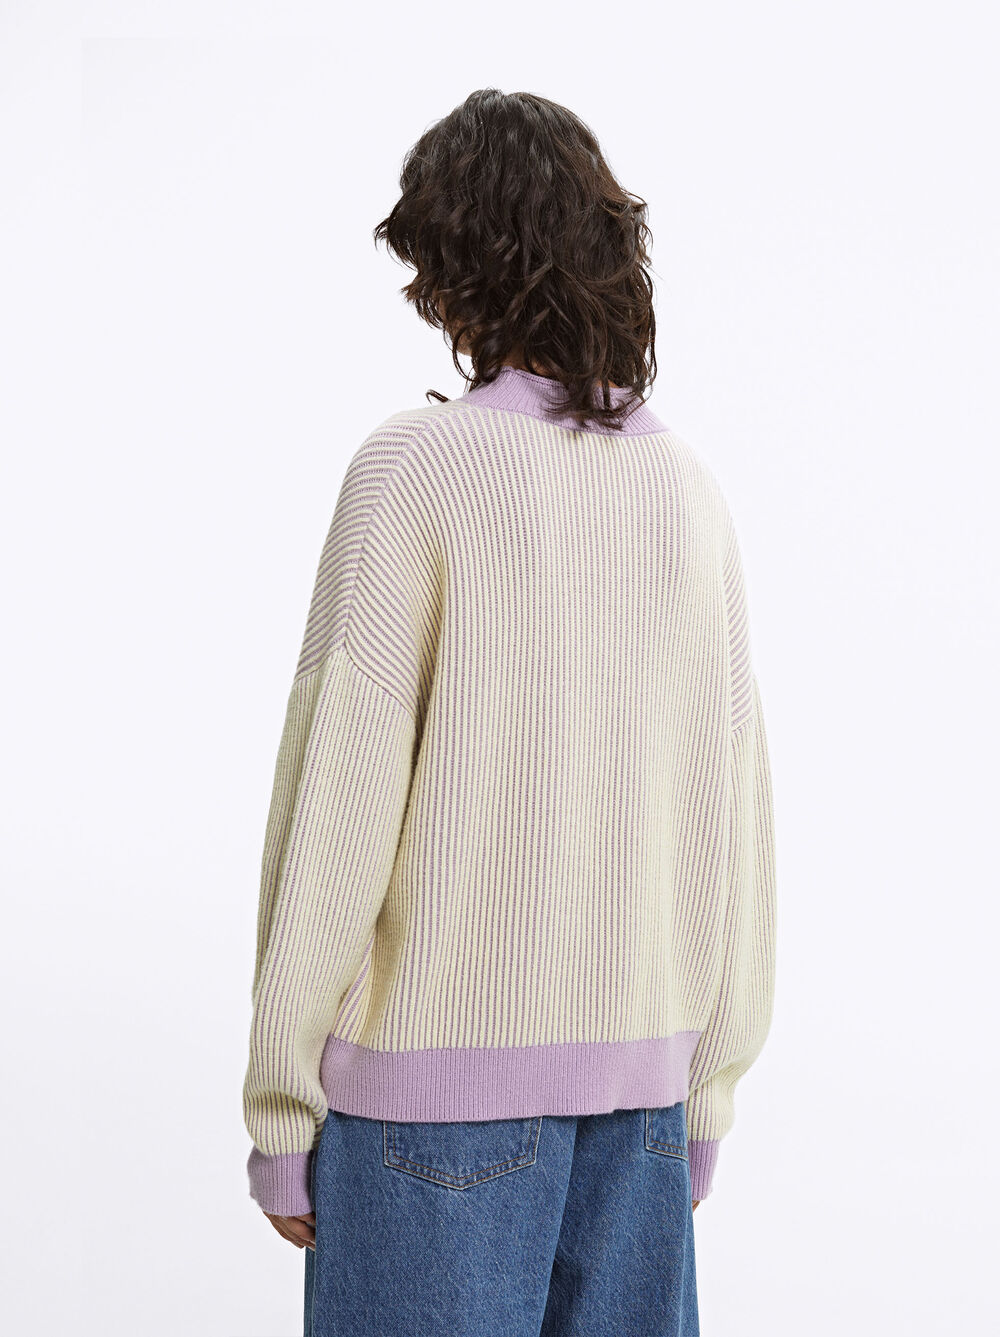 Rib Knit Sweater